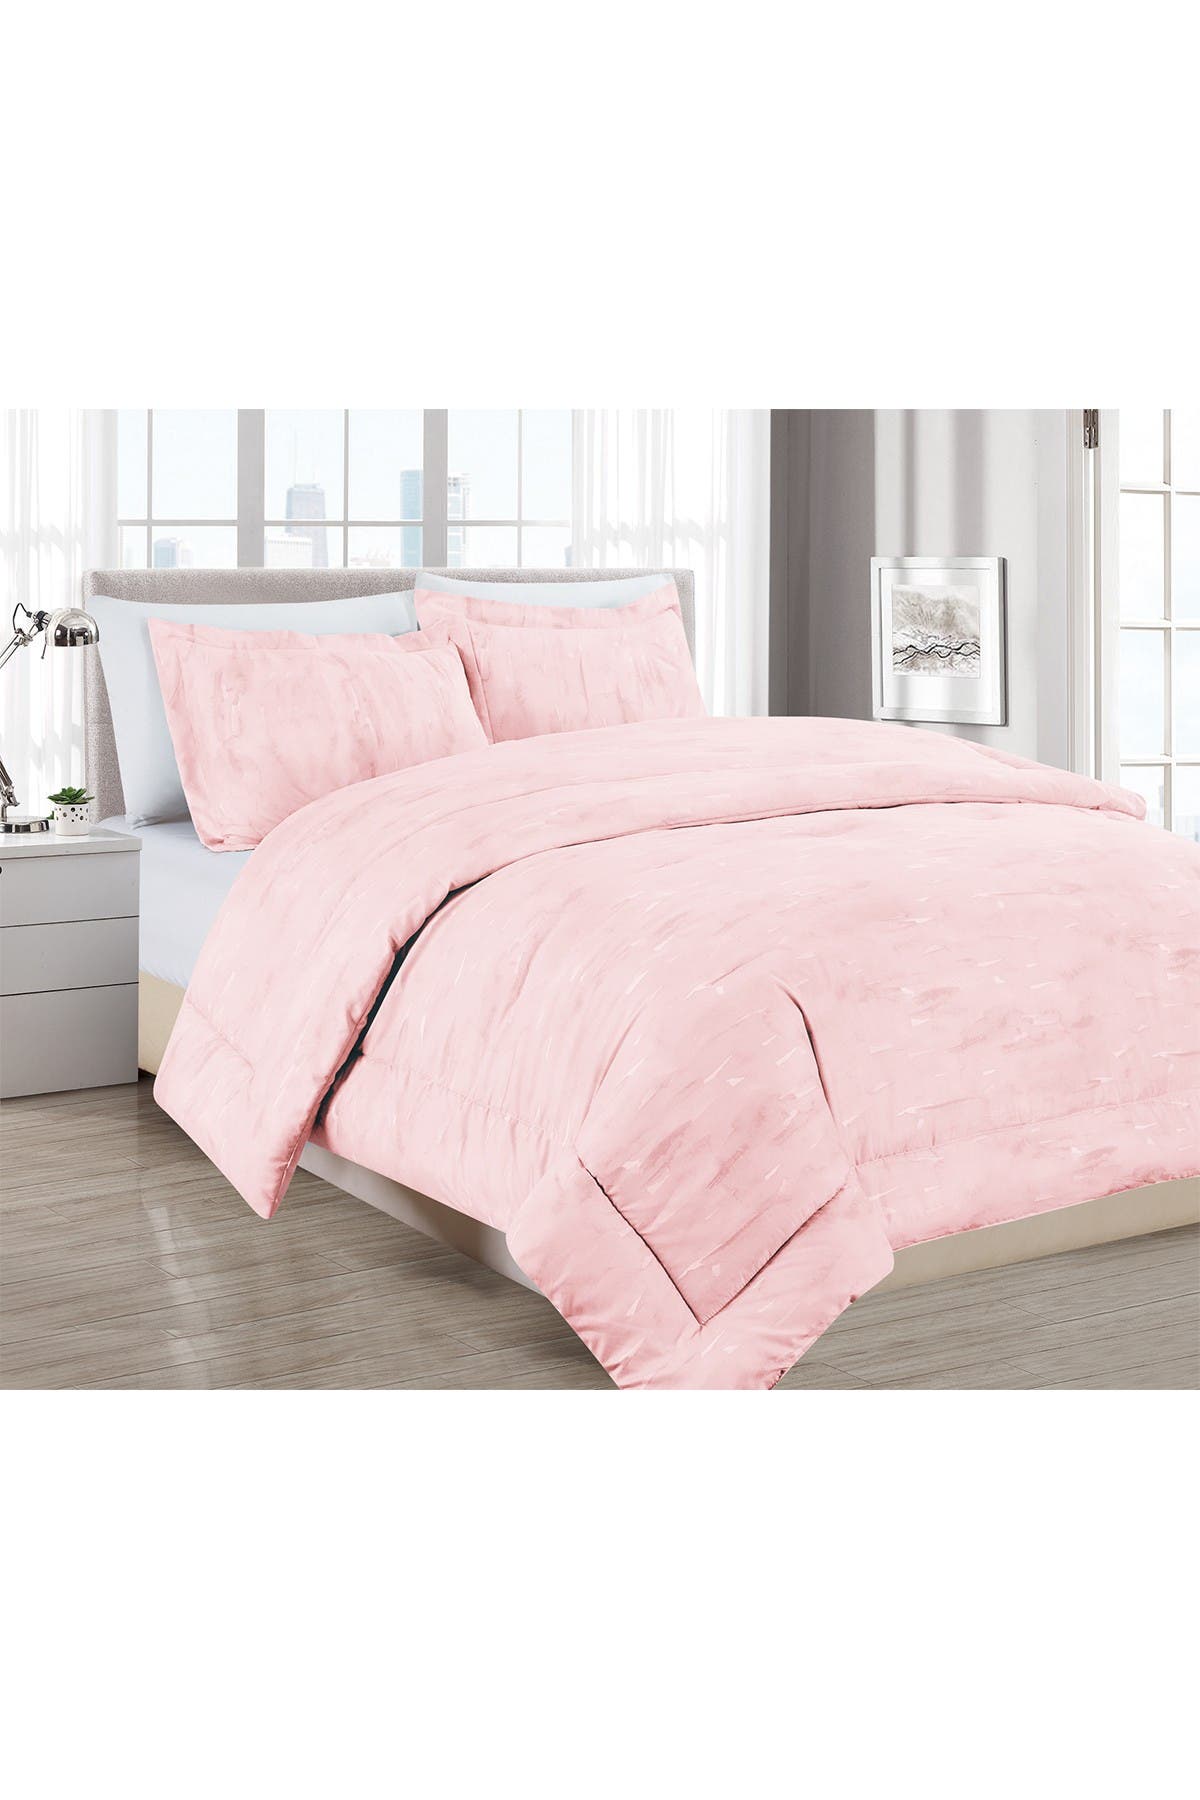 Melange Home Sleepy Texture Comforter 2-piece Set In Pink